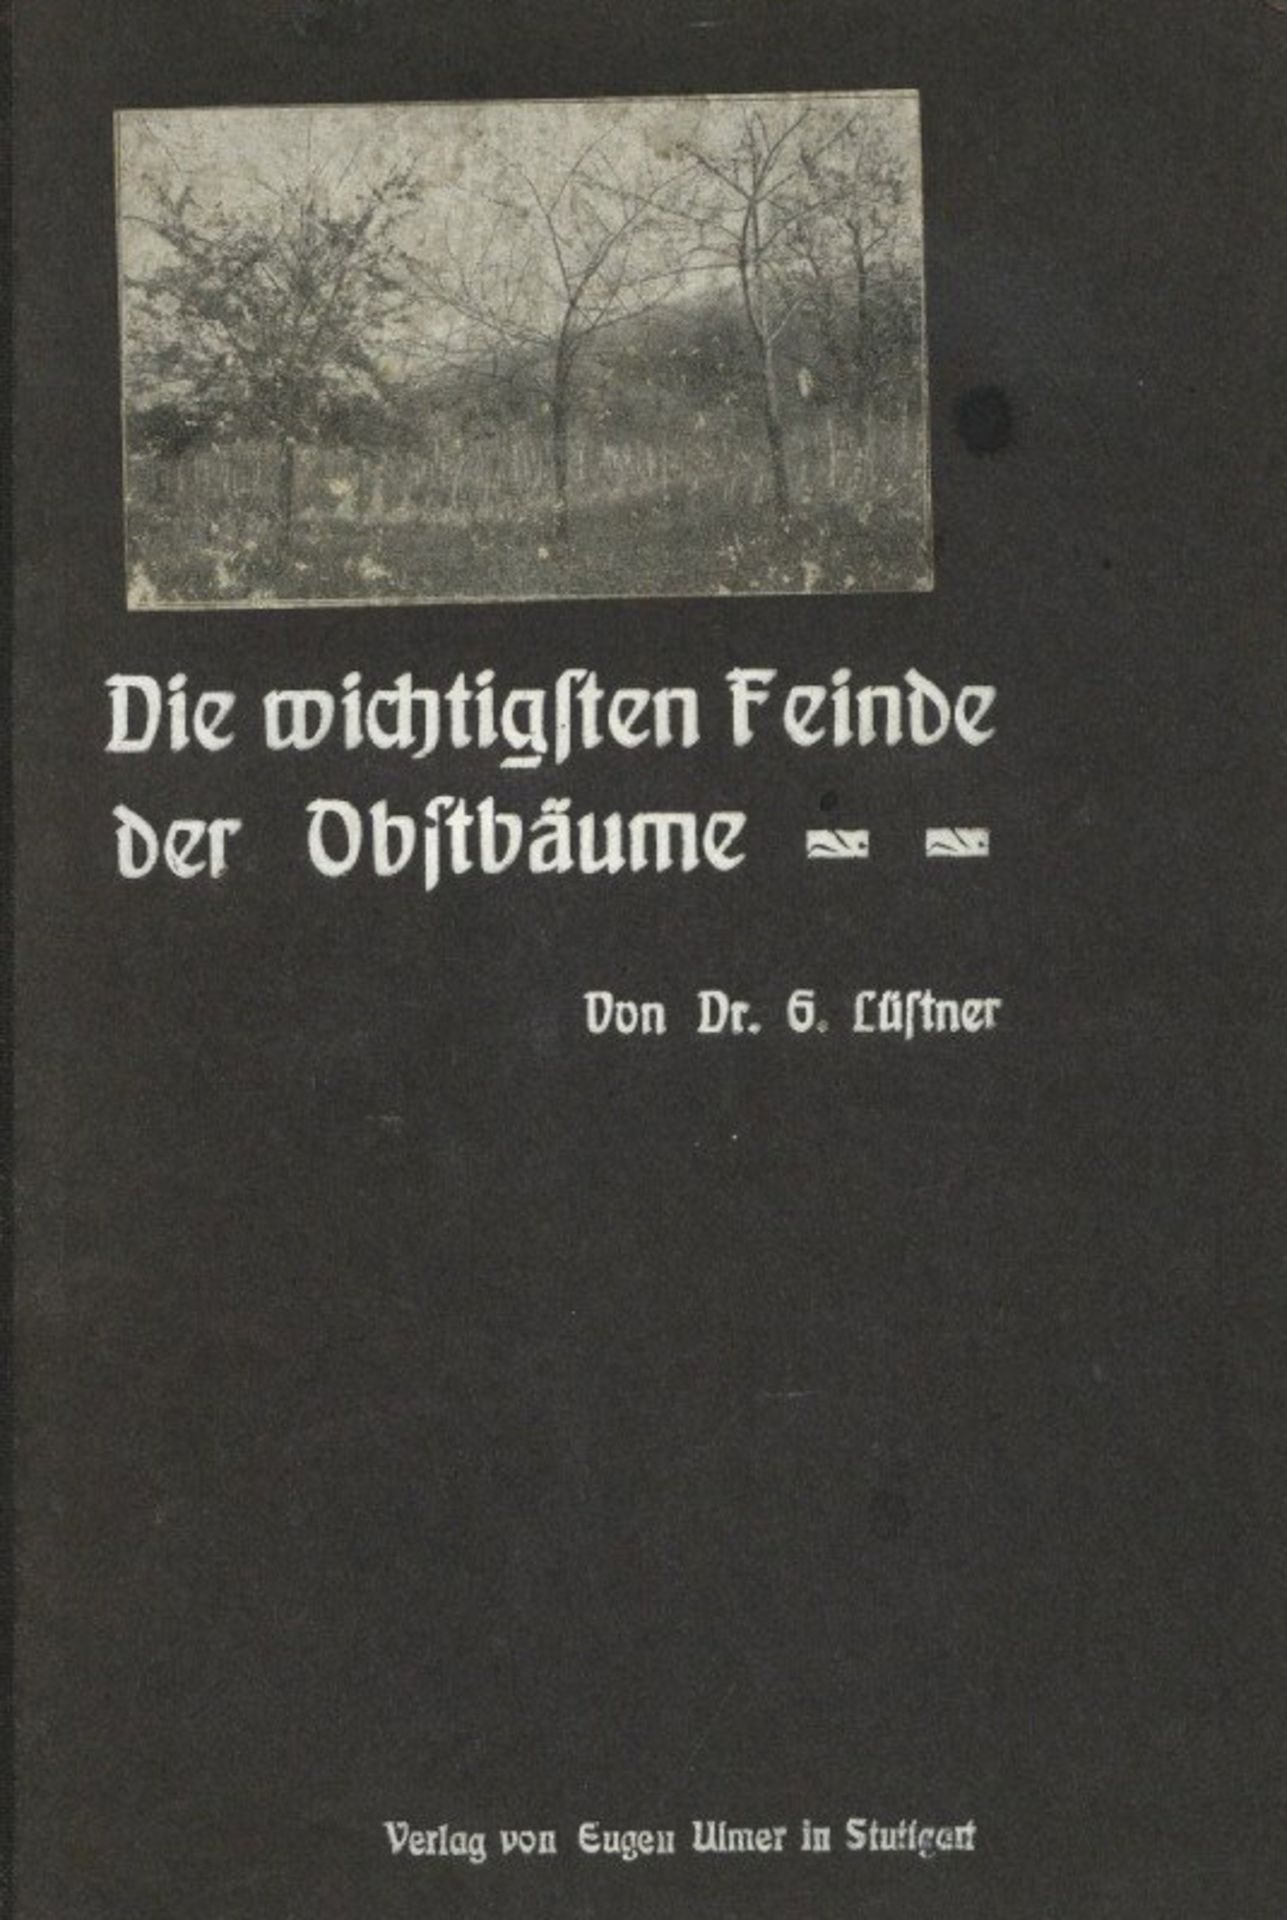 Wein Buch Die wichtigsten Feinde der Obstbäume Hrsg. Lüstner, Gustav 1907 Verlag Ulmer, Eugen